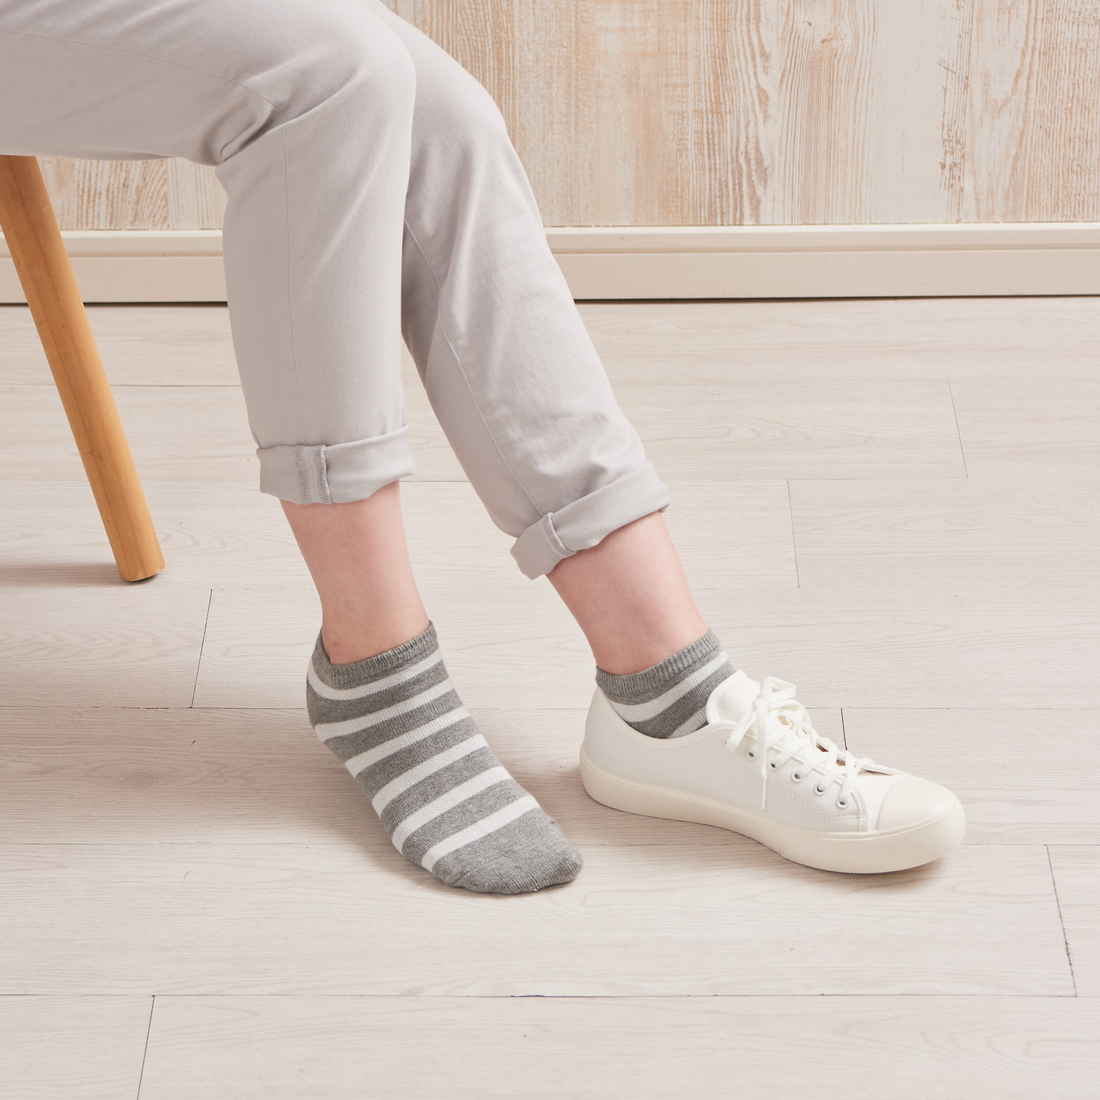 腳跟平滑襪 - 條紋單層棉混紡 - 594